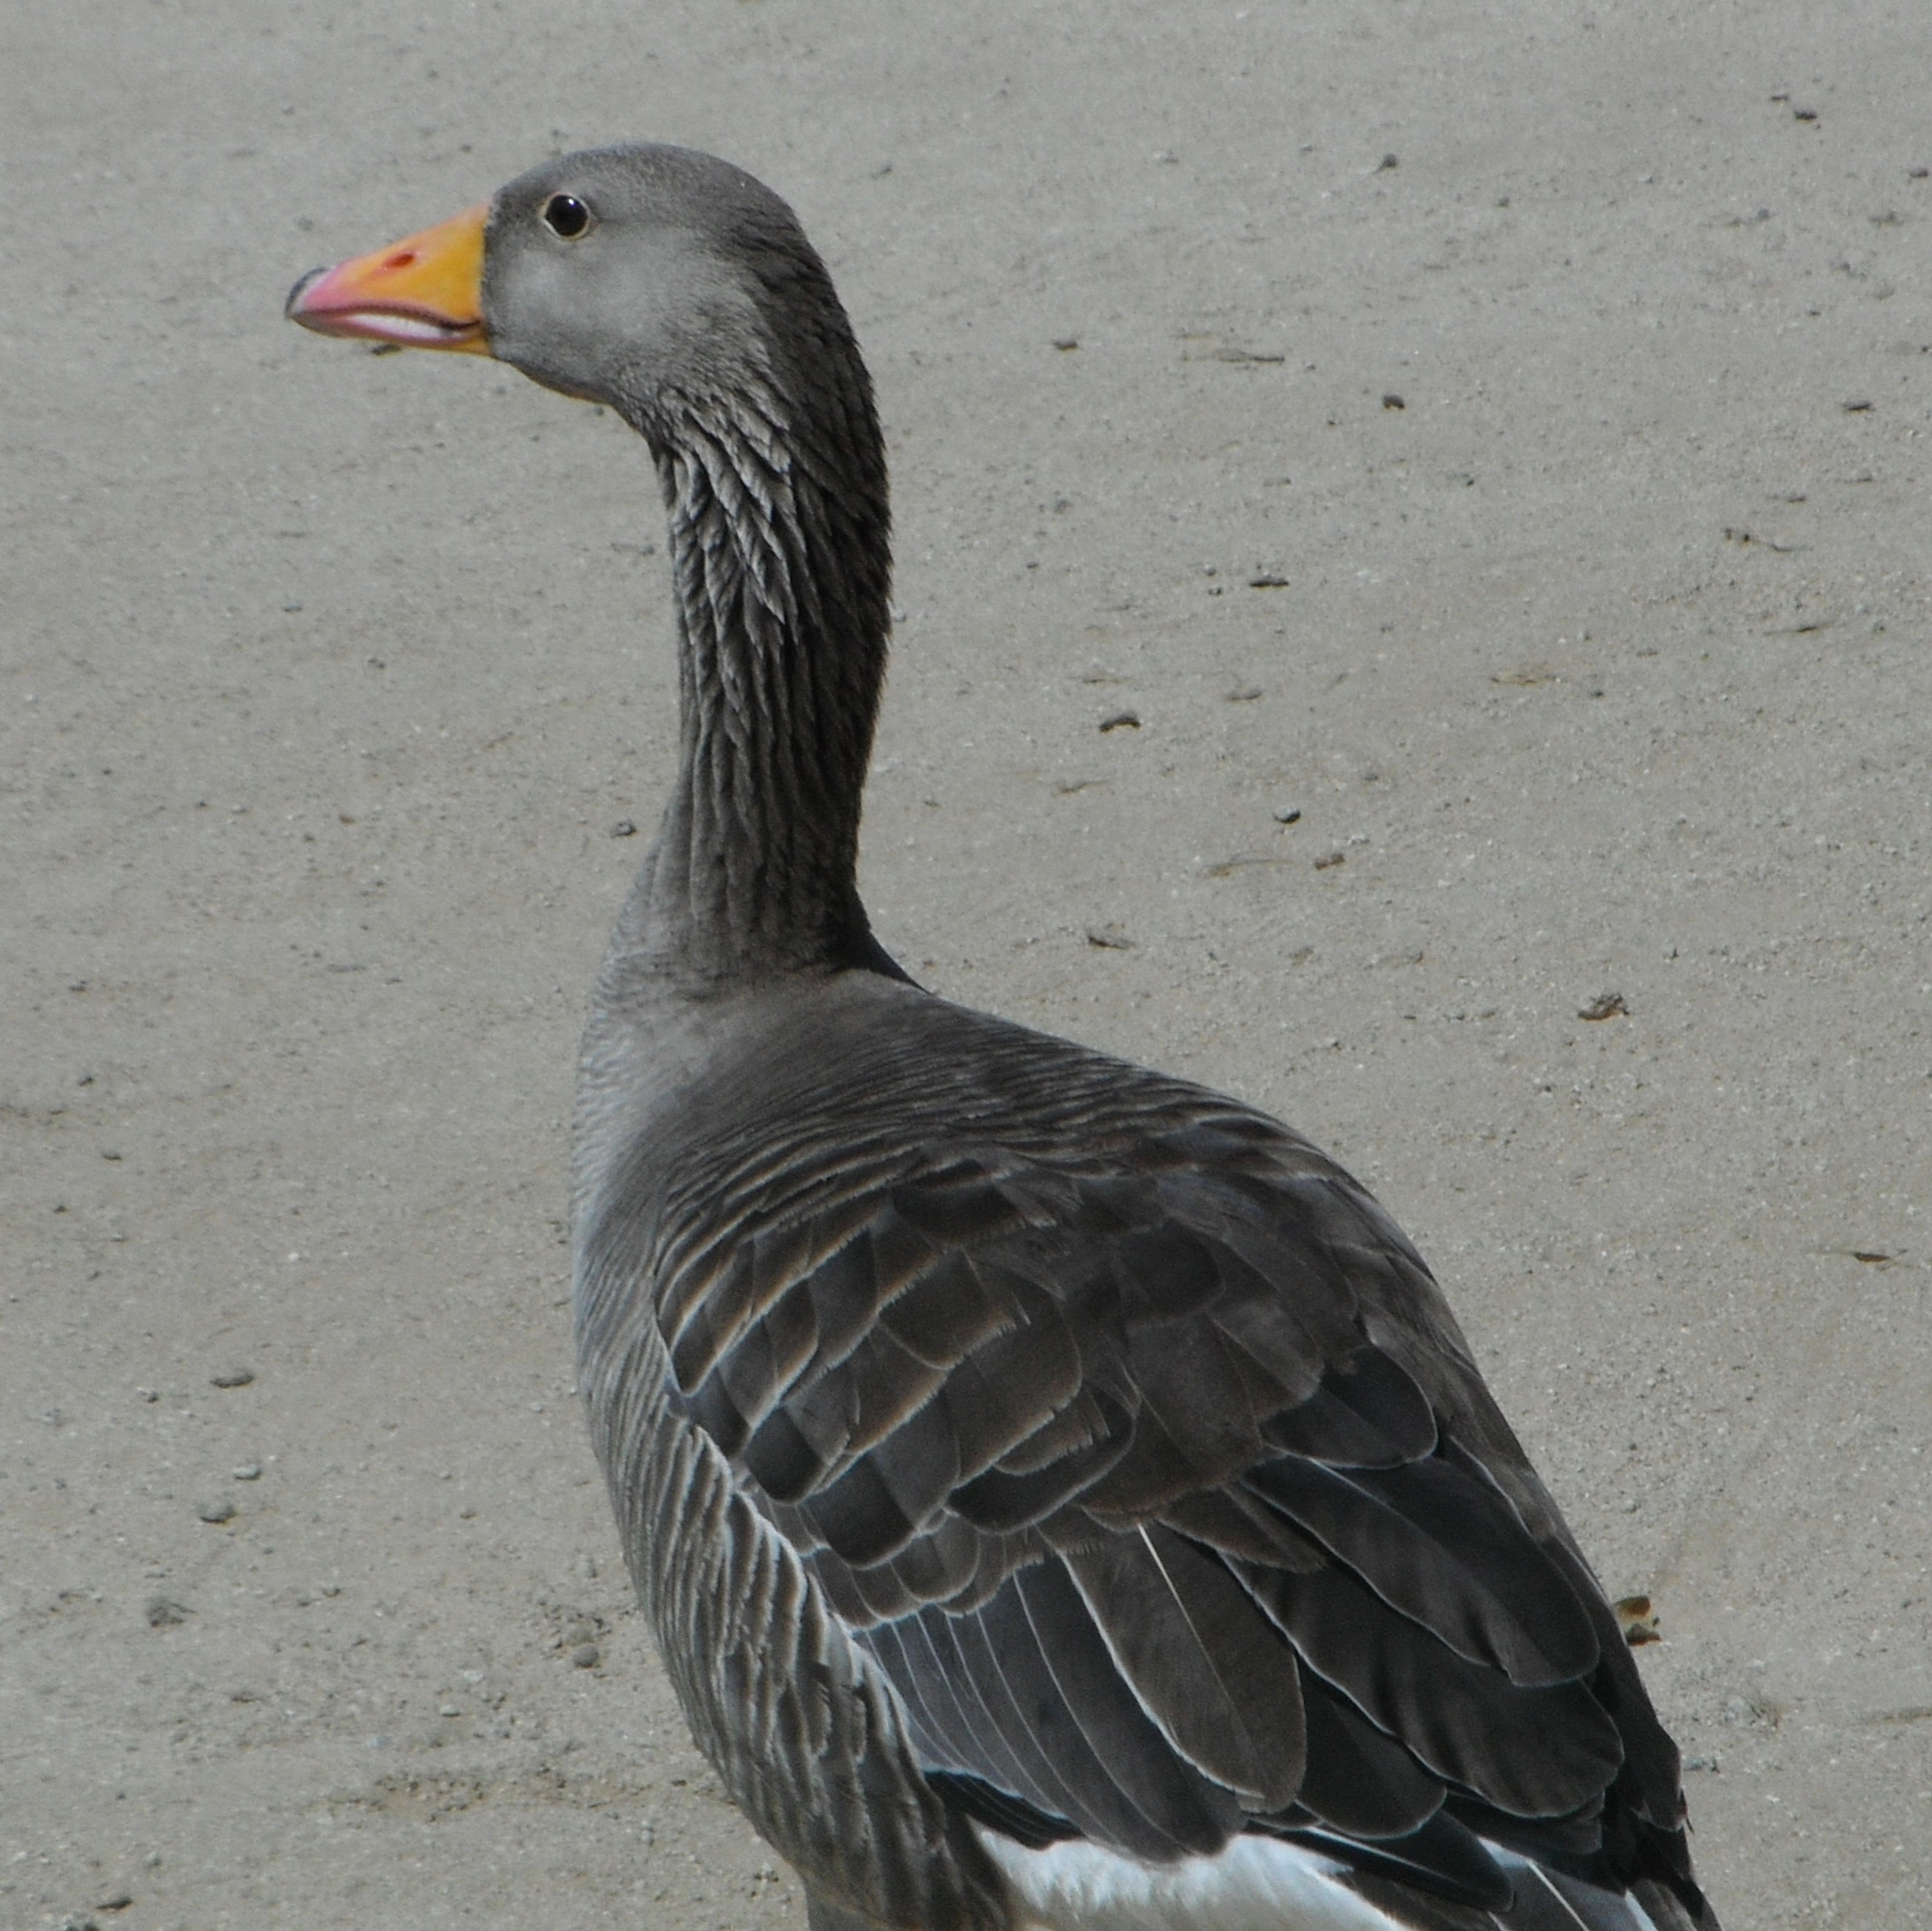 Goose, Anatomy, Migration & Behavior